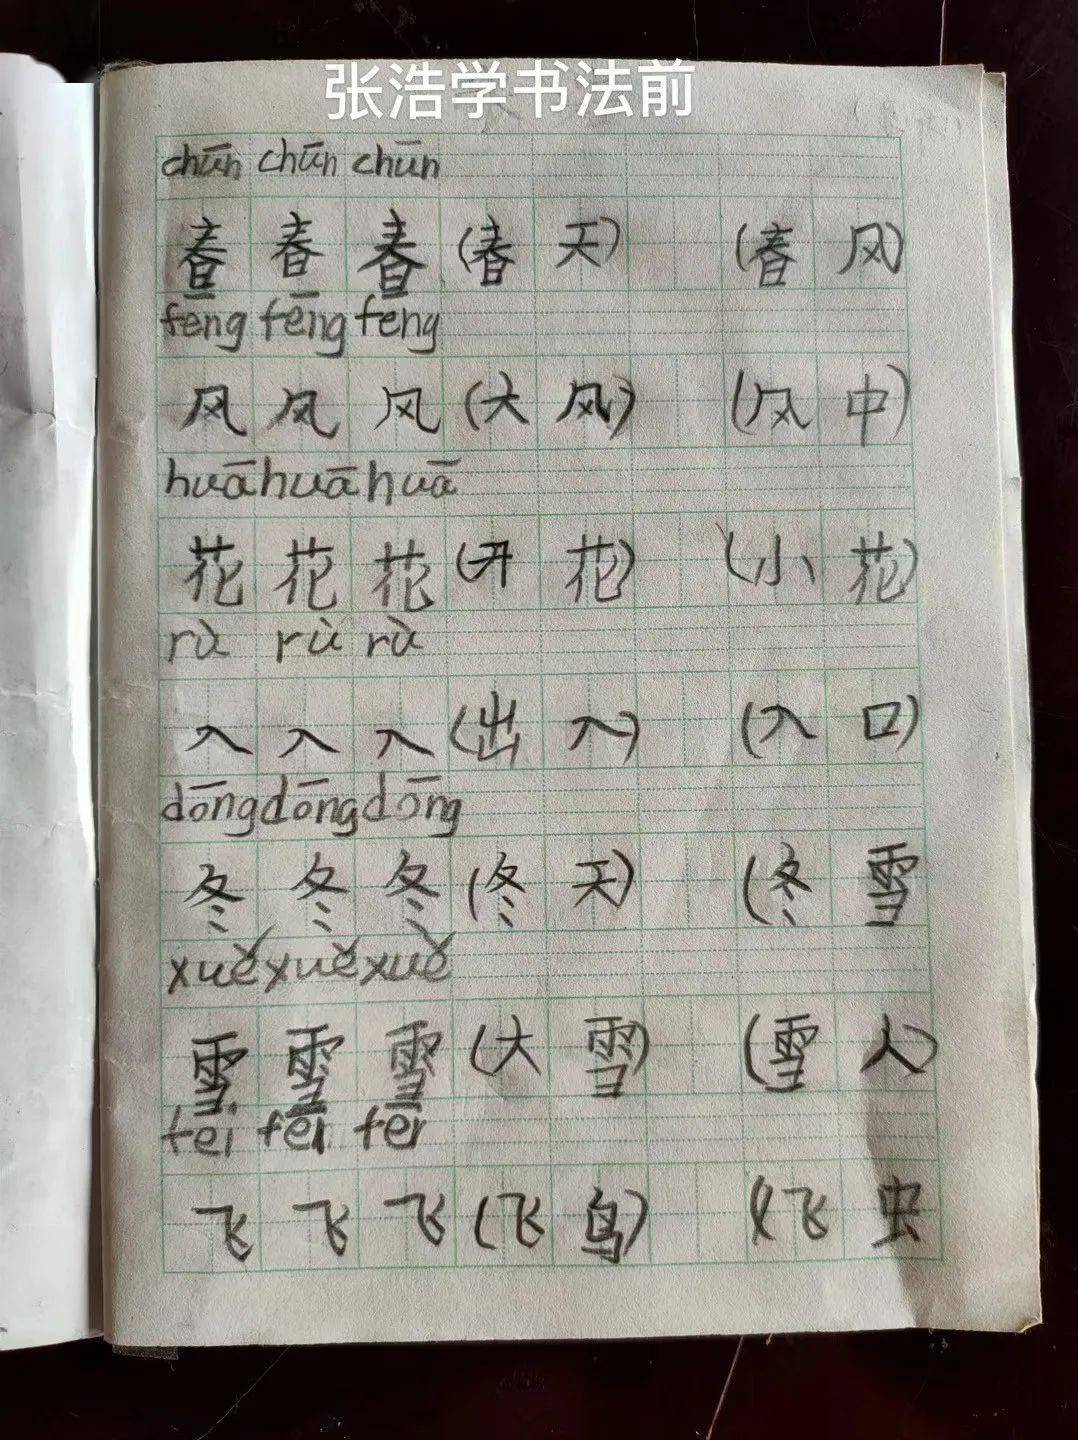 上新闻!峨眉8岁男孩手写印刷体汉字走红网络,背后的原因.